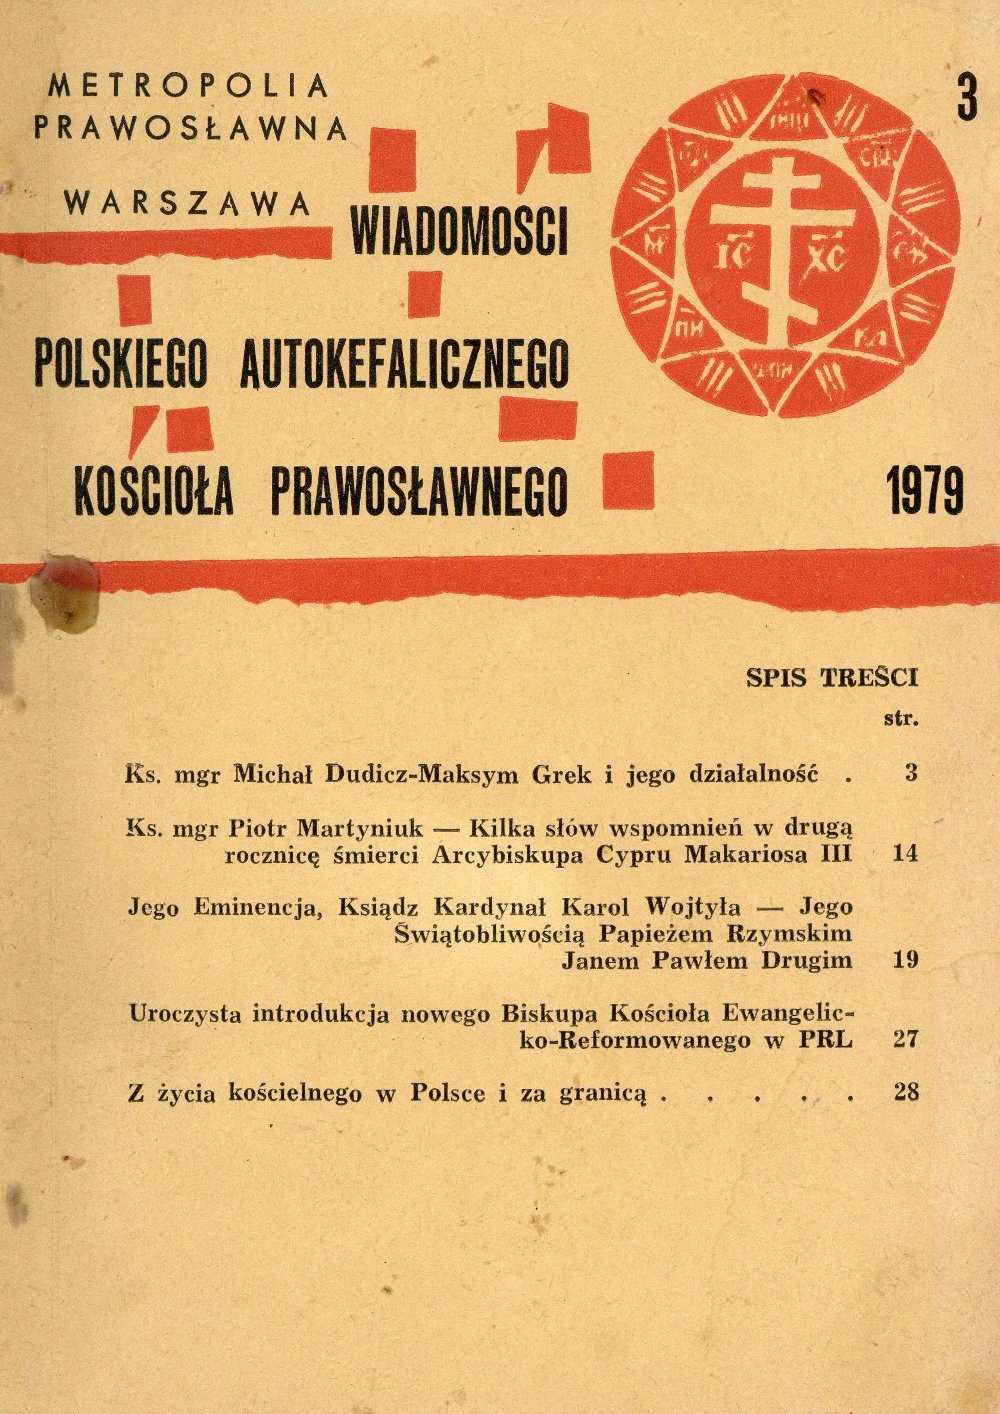 Wiadomości Polskiego Autokefalicznego Kościoła Prawosławnego 3 / 1979